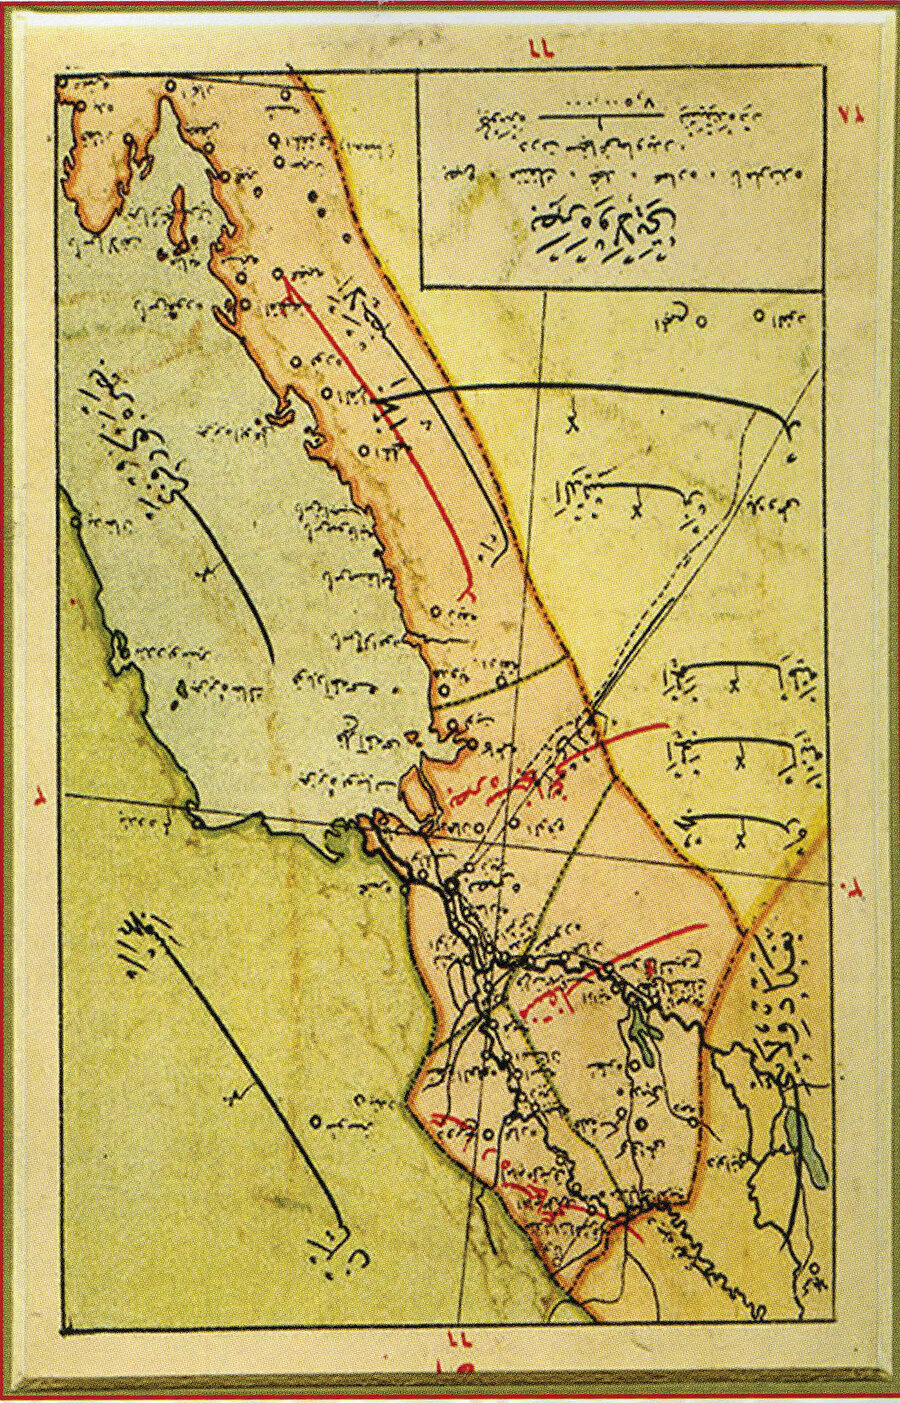 » Osmanlı Basra’sı: Basra geçmişten günümüze Şiiliğin önemli merkezlerinden biri olmuştur. Yanda Osmanlı döneminde Basra vilayetini gösteren eski bir harita görülüyor. 